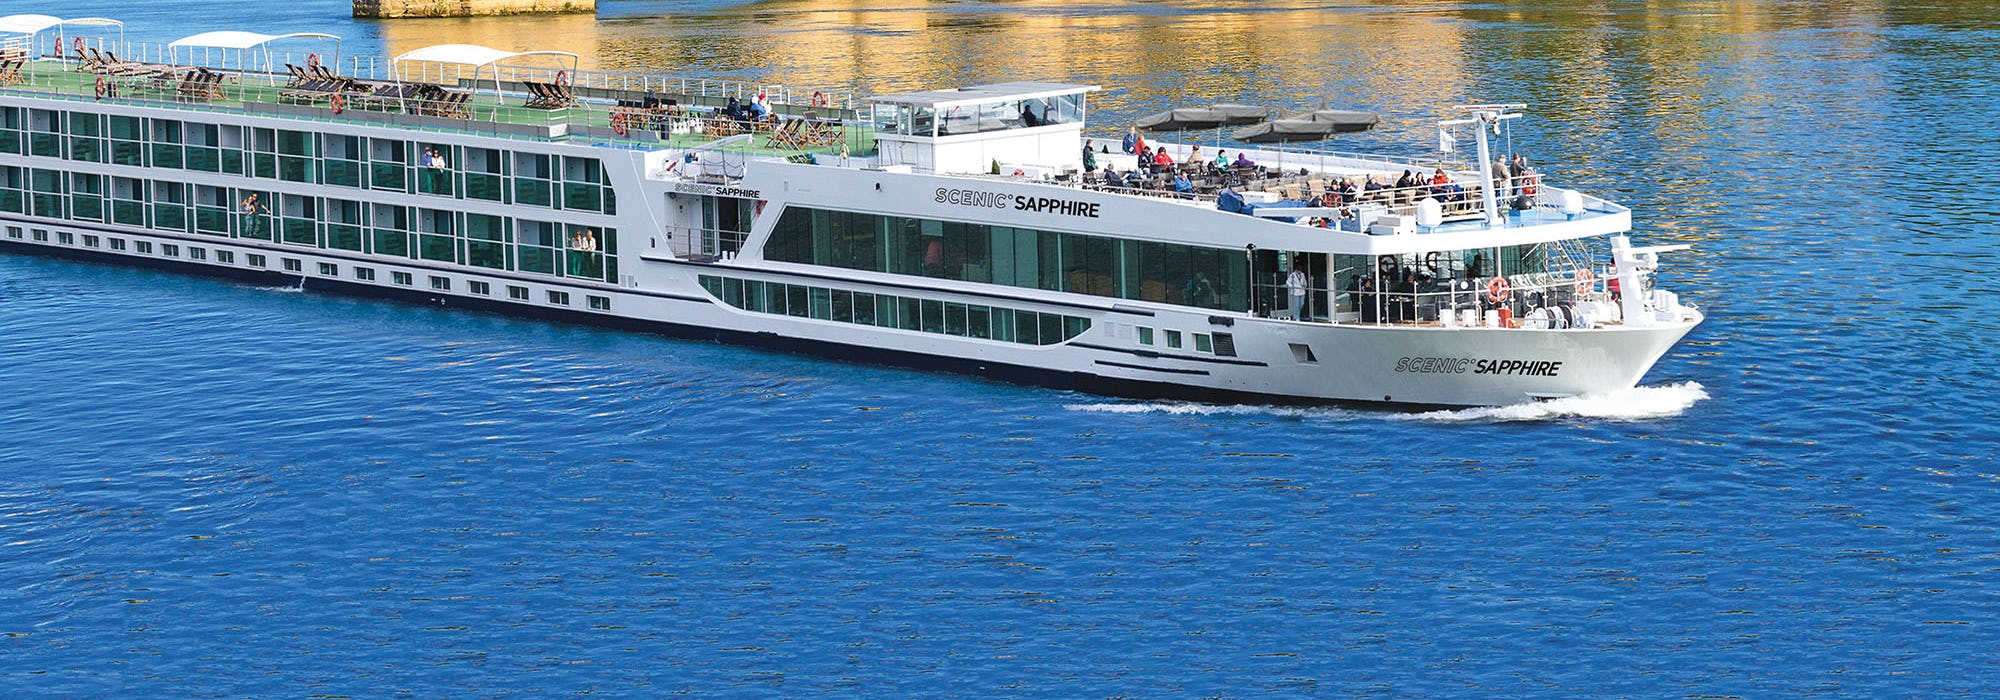 Scenic River Cruises